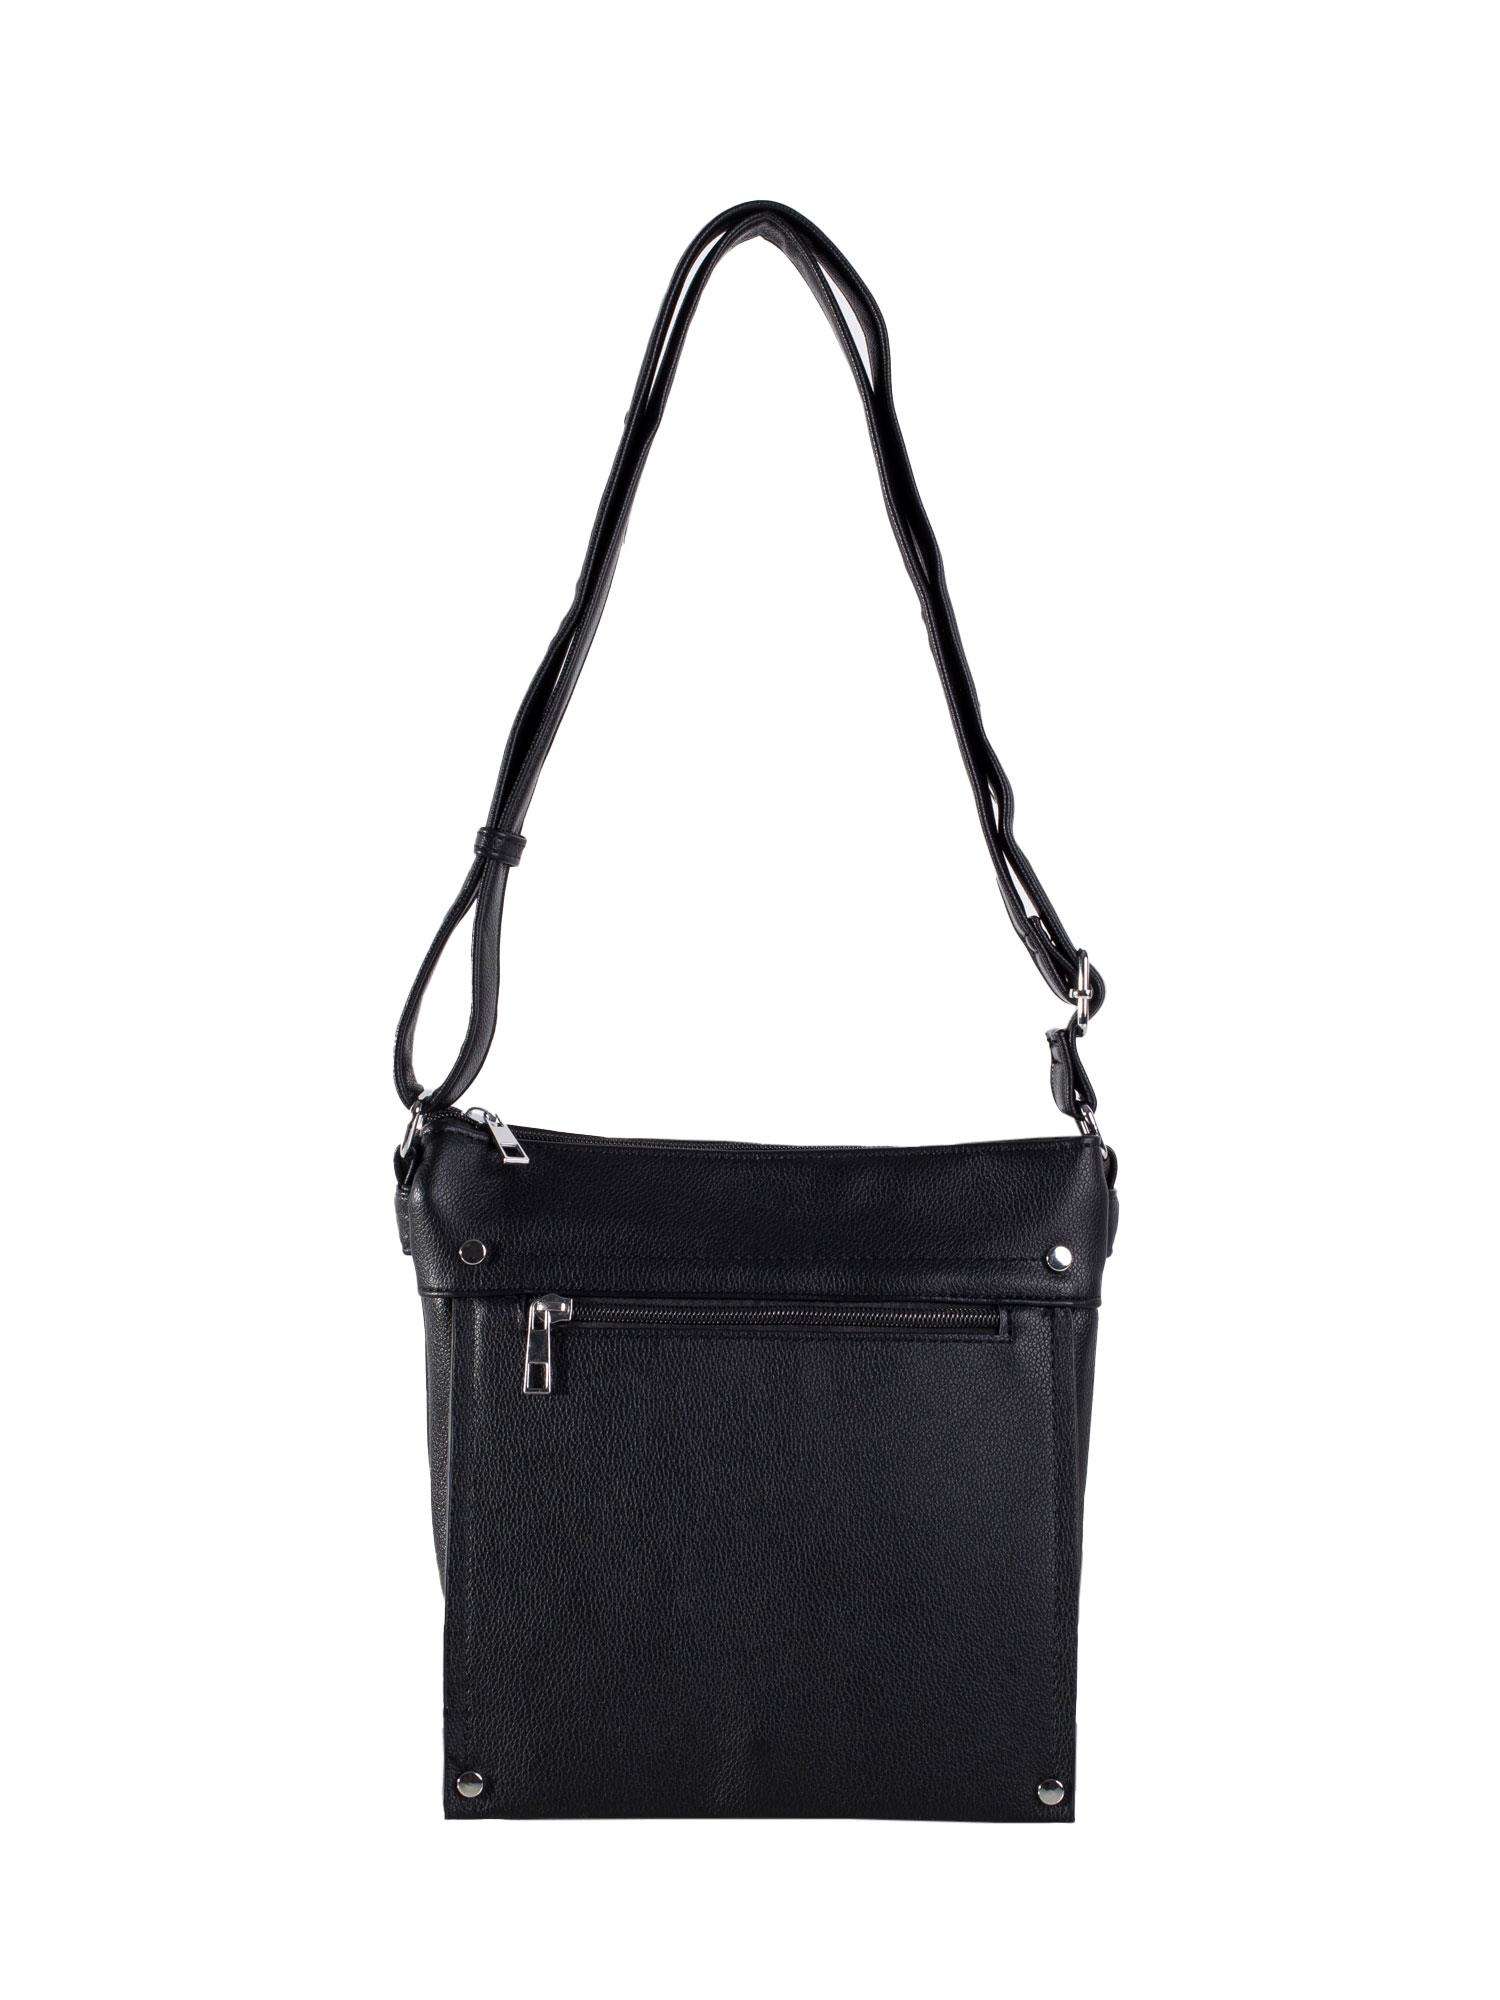 Black women's shoulder bag made of eco-leather